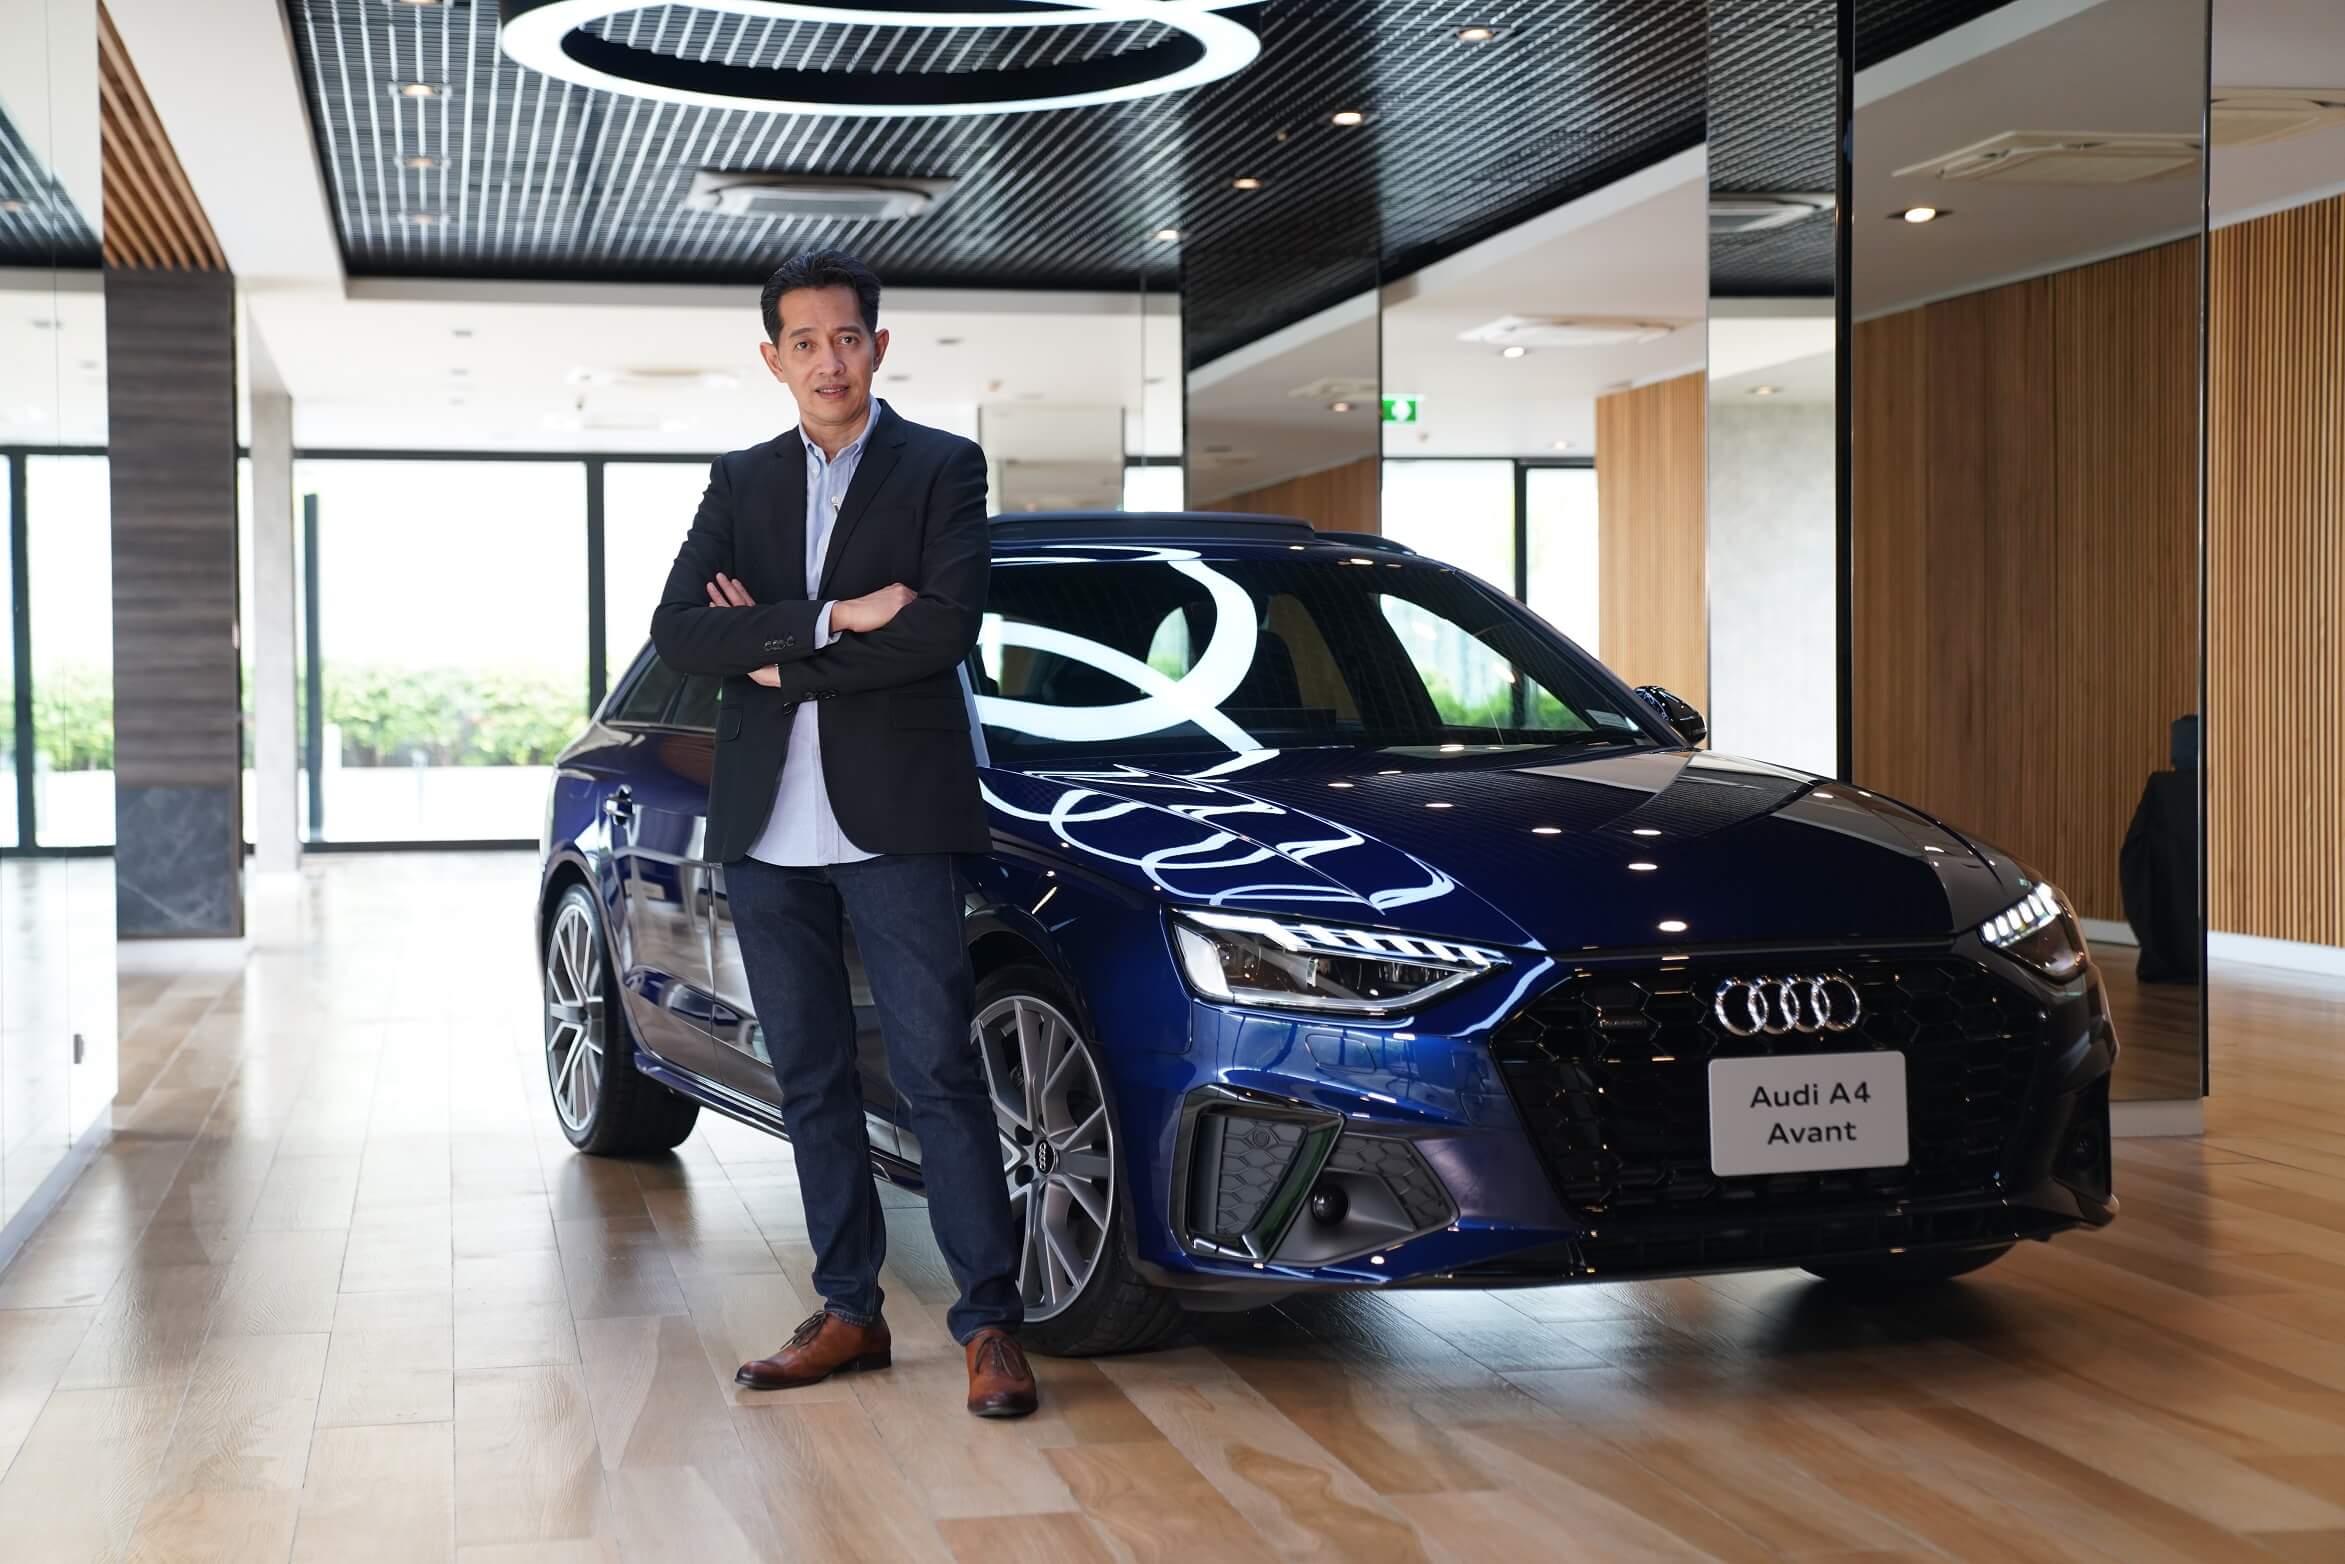 อาวดี้ ประเทศไทย สร้างปรากฎการณ์ใหม่ เปิดตัว “The New Audi A5” หลากหลายรุ่น พร้อมปรับราคาคุ้มสุดๆ เริ่มต้นเพียง 2.699 ล้านบาท ซื้อวันนี้ผ่อ